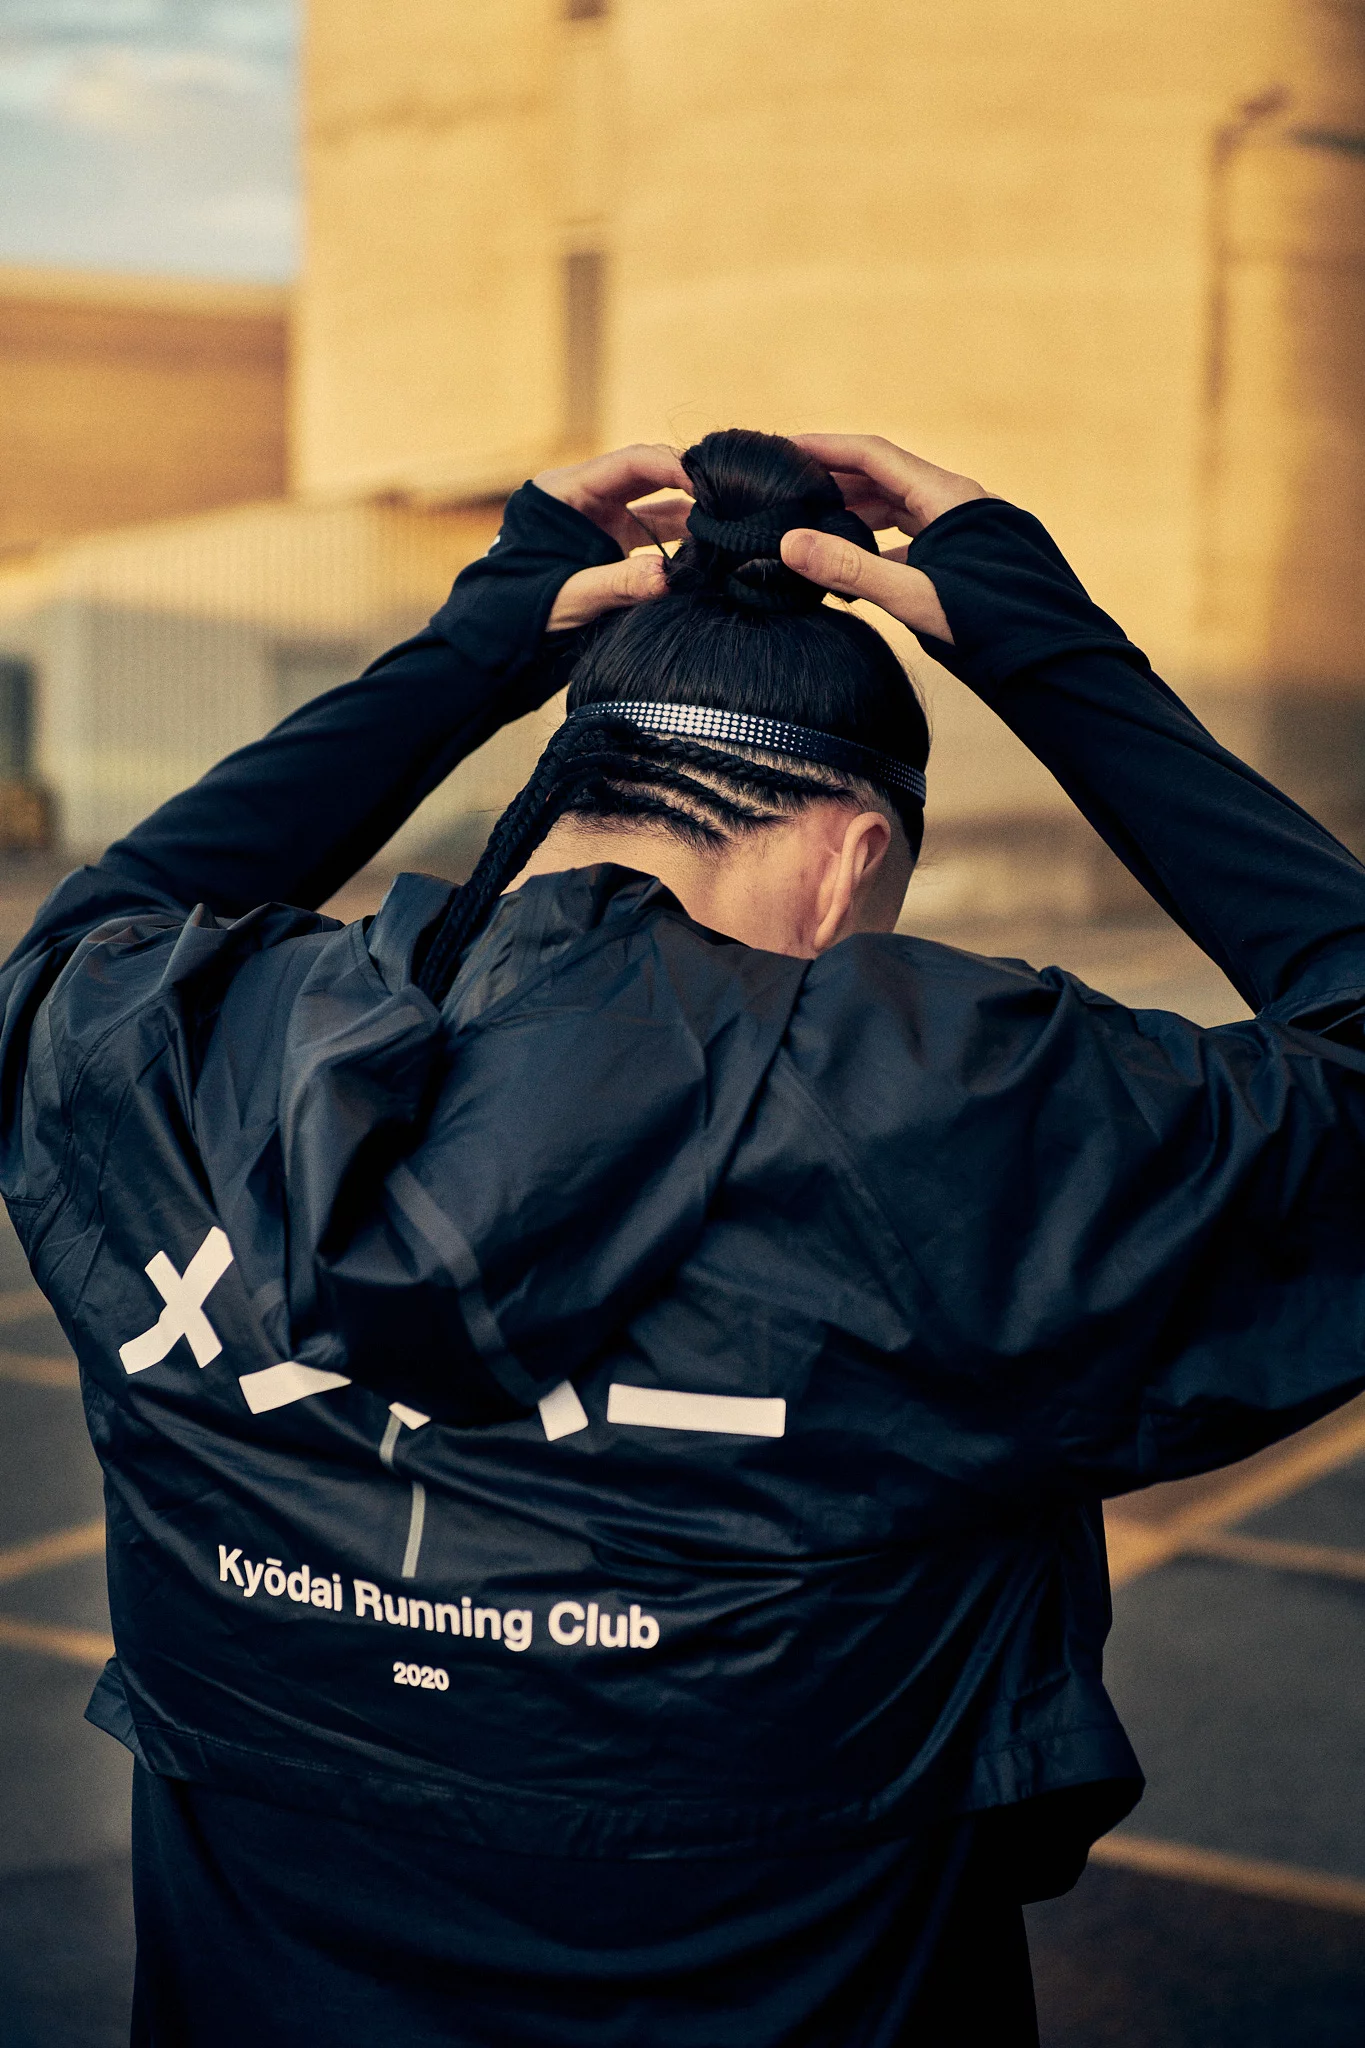 Kyodai Running Club 2 by Daniel BLOM